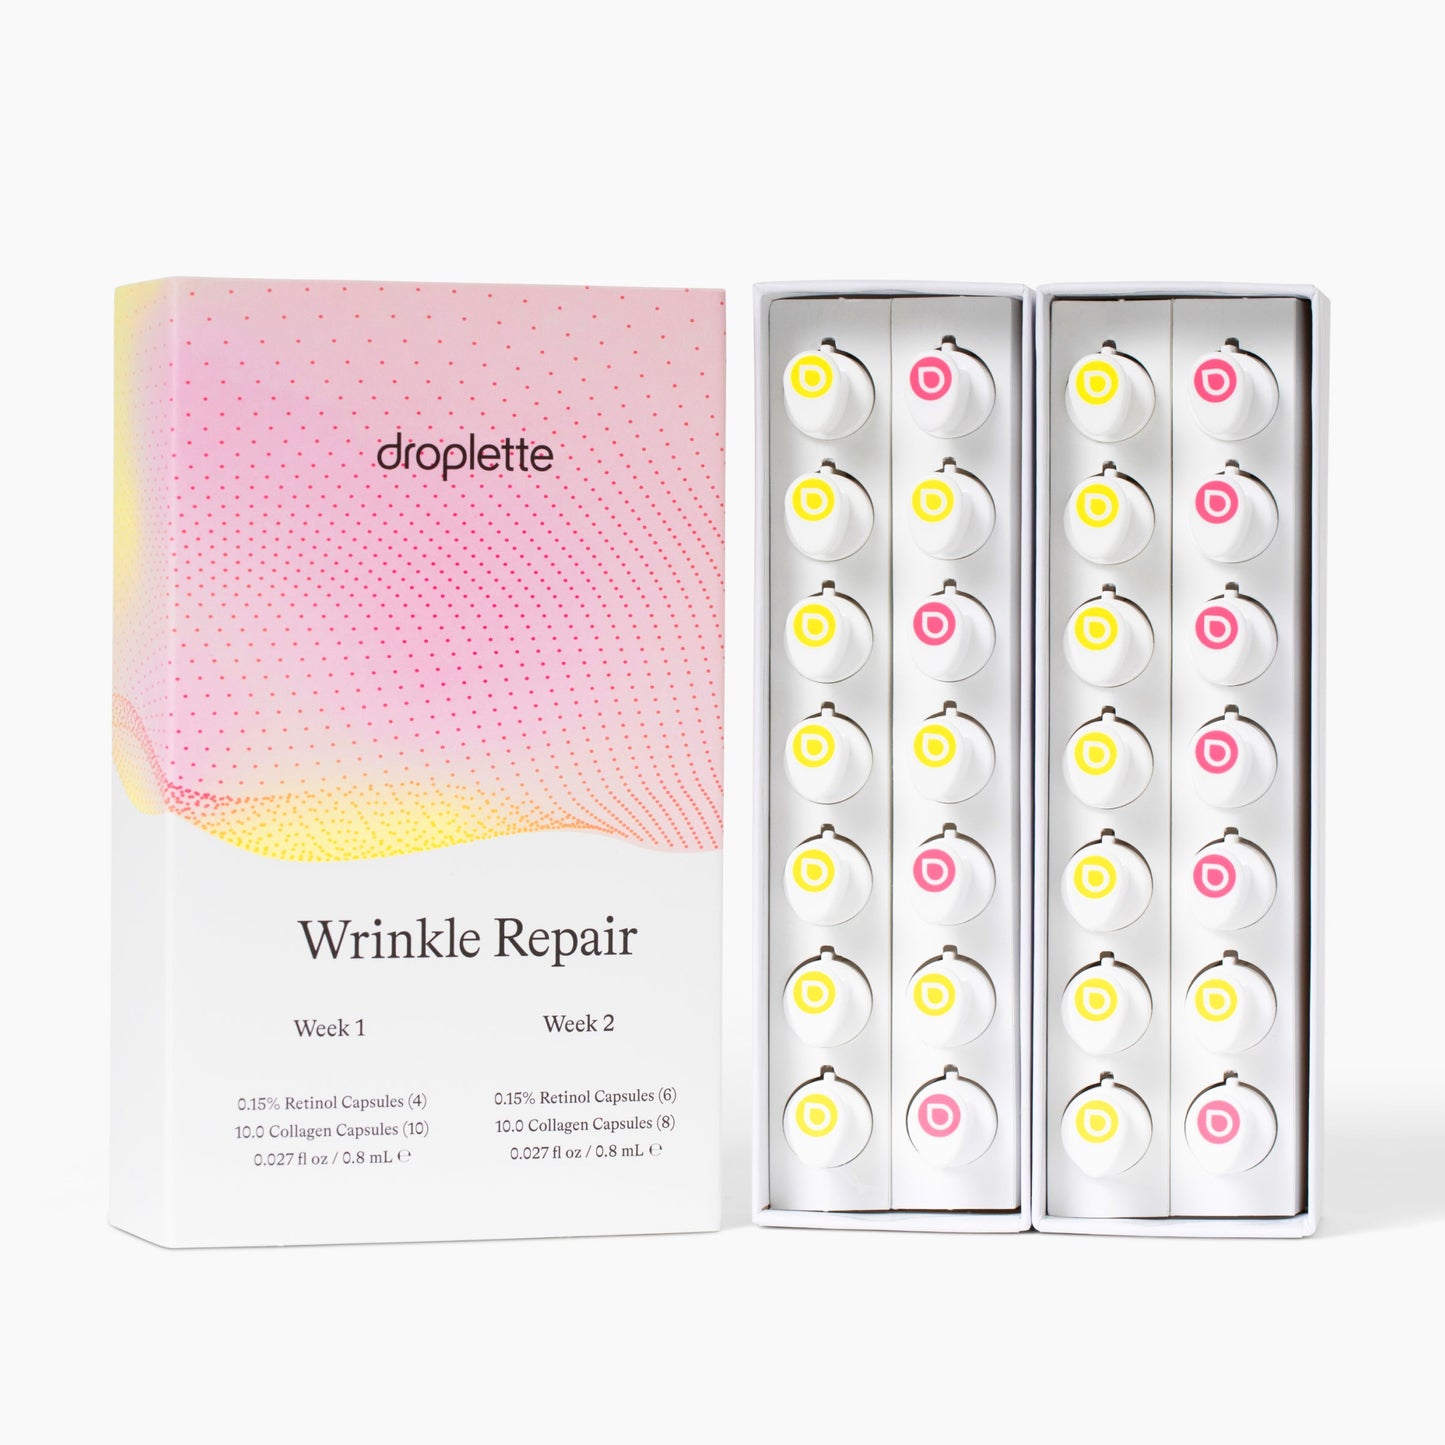 Wrinkle Repair Prescriptive Regimen Capsules by Droplette